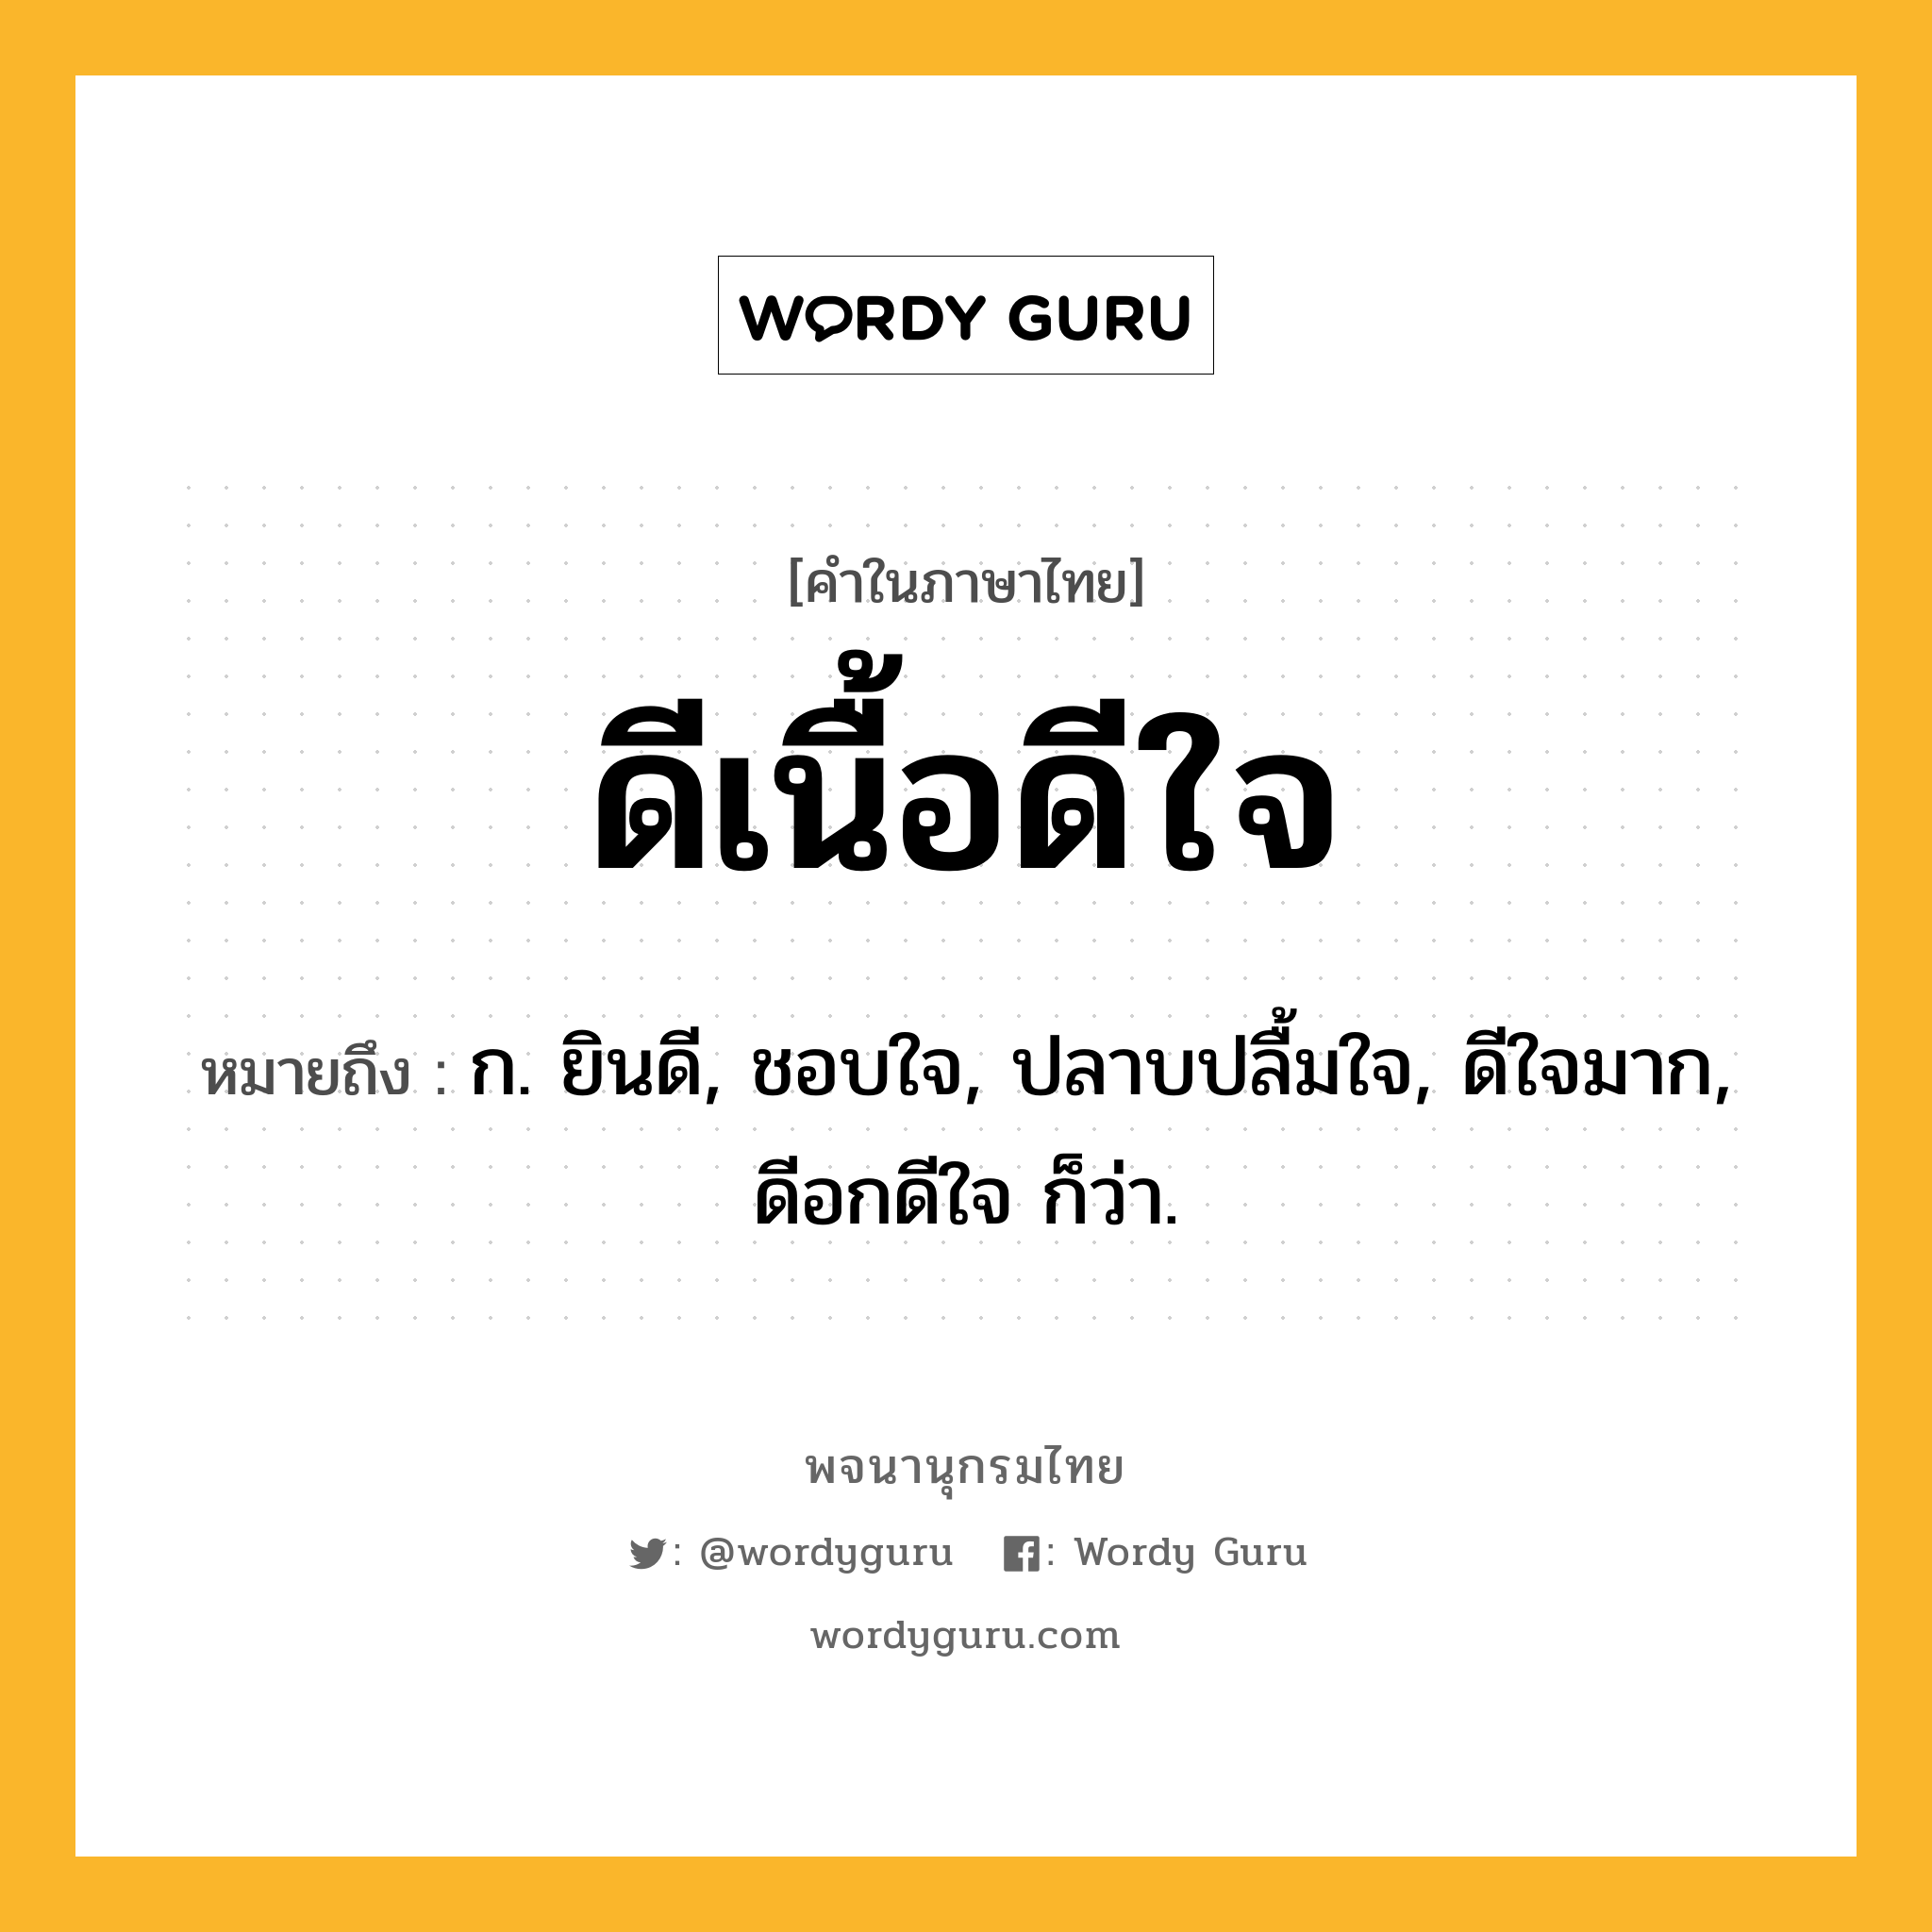 ดีเนื้อดีใจ หมายถึงอะไร?, คำในภาษาไทย ดีเนื้อดีใจ หมายถึง ก. ยินดี, ชอบใจ, ปลาบปลื้มใจ, ดีใจมาก, ดีอกดีใจ ก็ว่า.